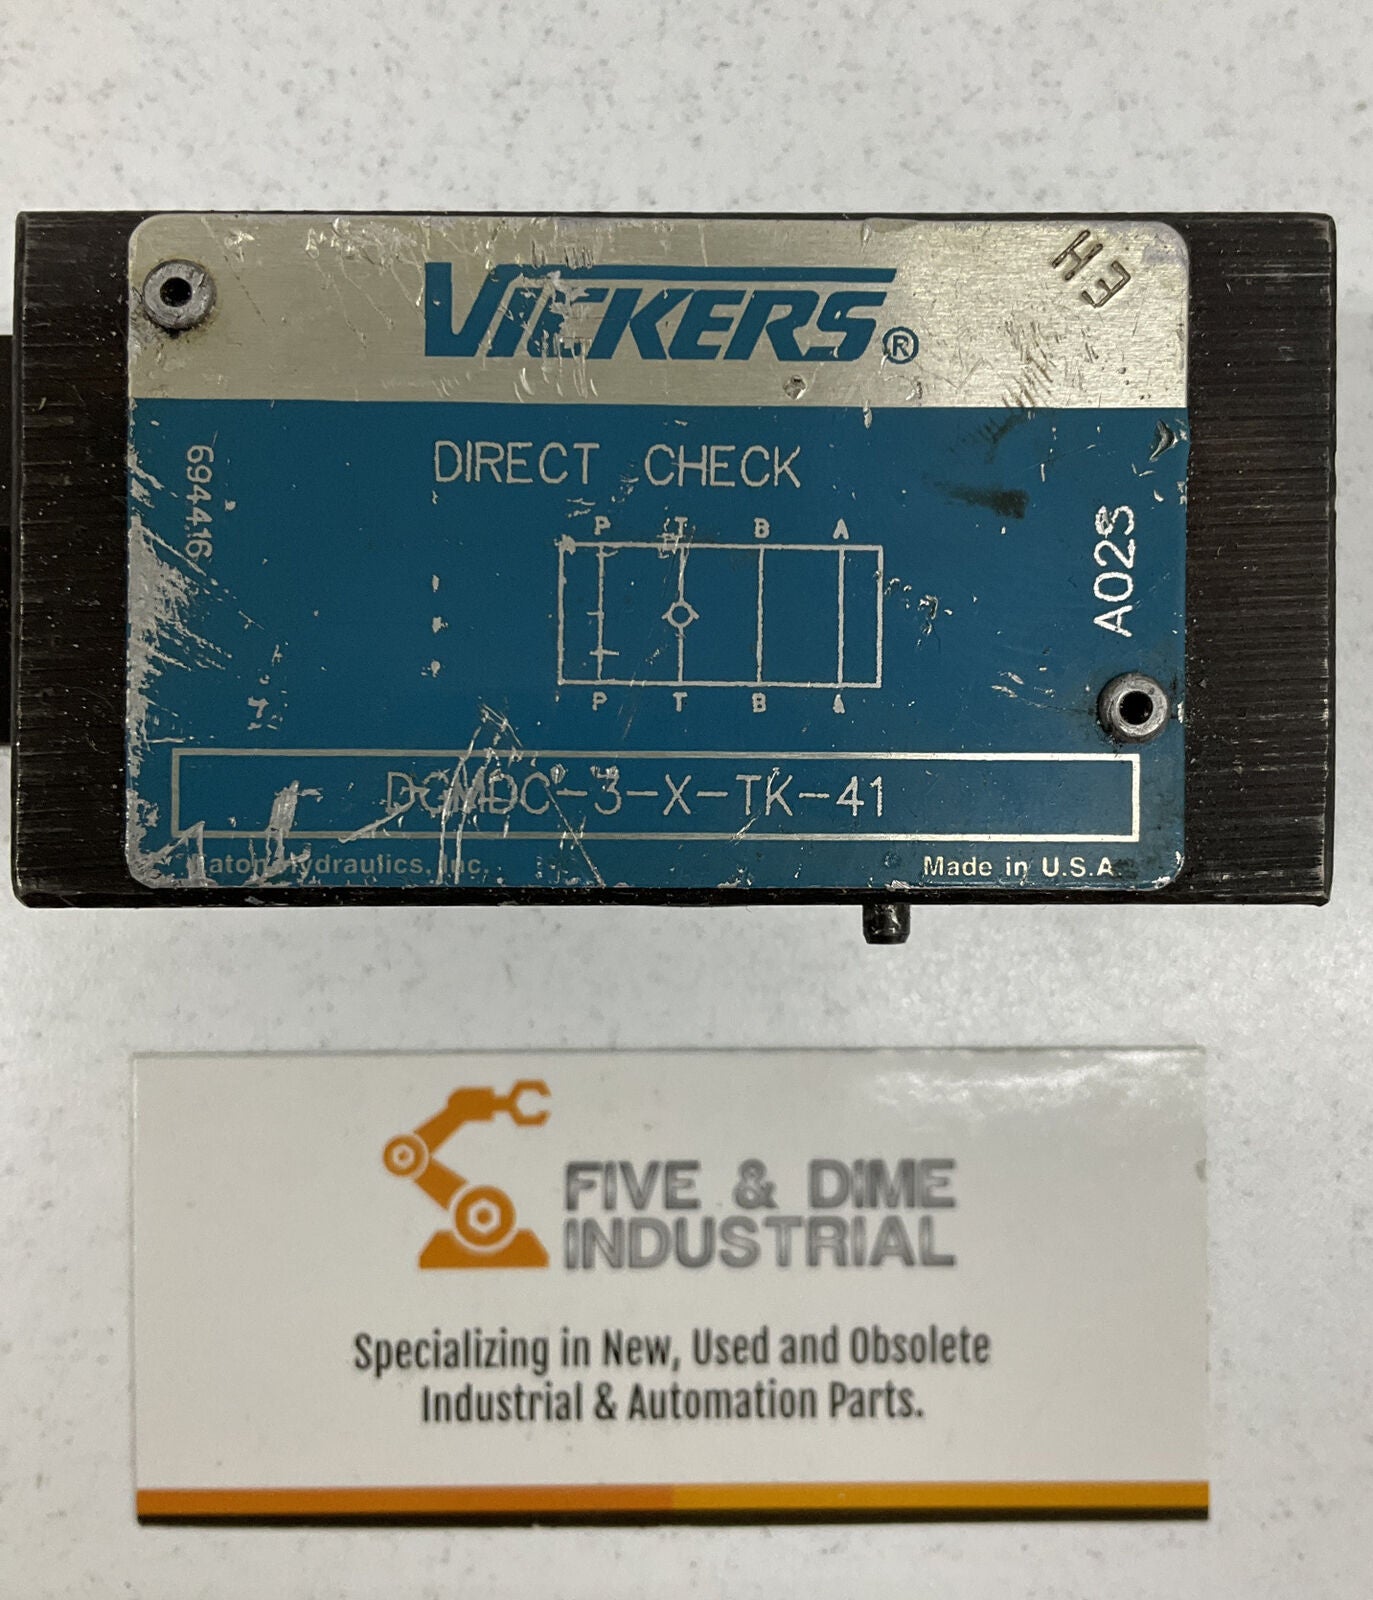 Eaton Vickers DGMDC-3-X-TK-41 Pilot Check Valve 694416 (BL187) - 0